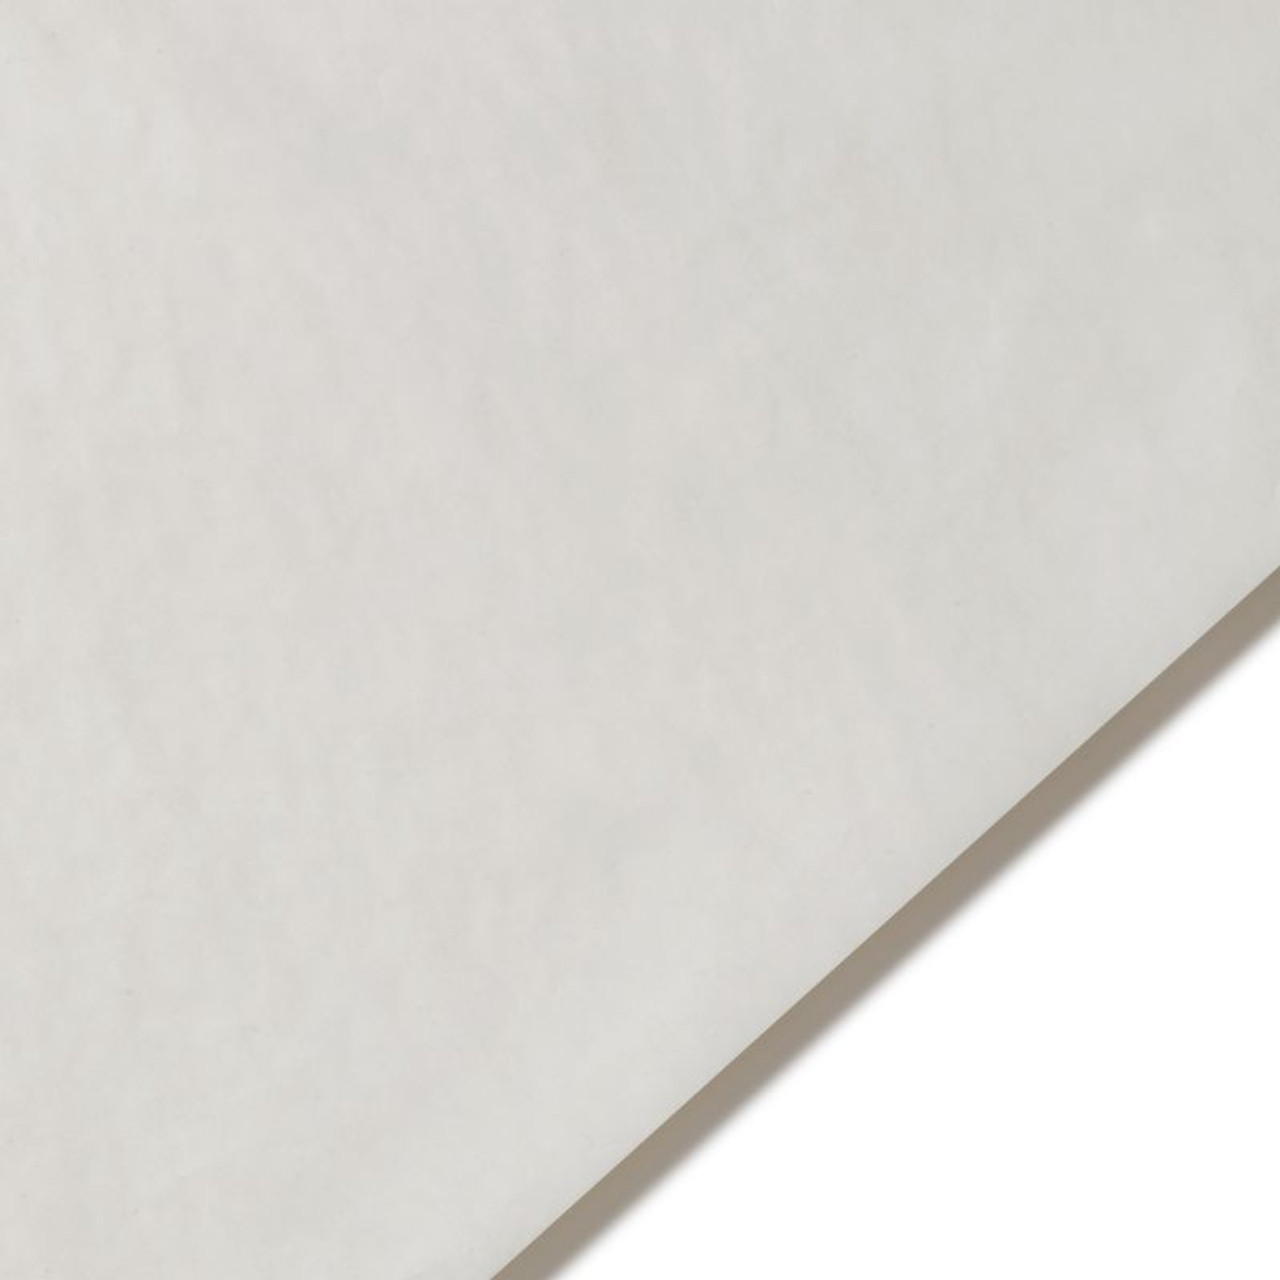 White Glassine Paper, 24 x 36 - FLAX art & design